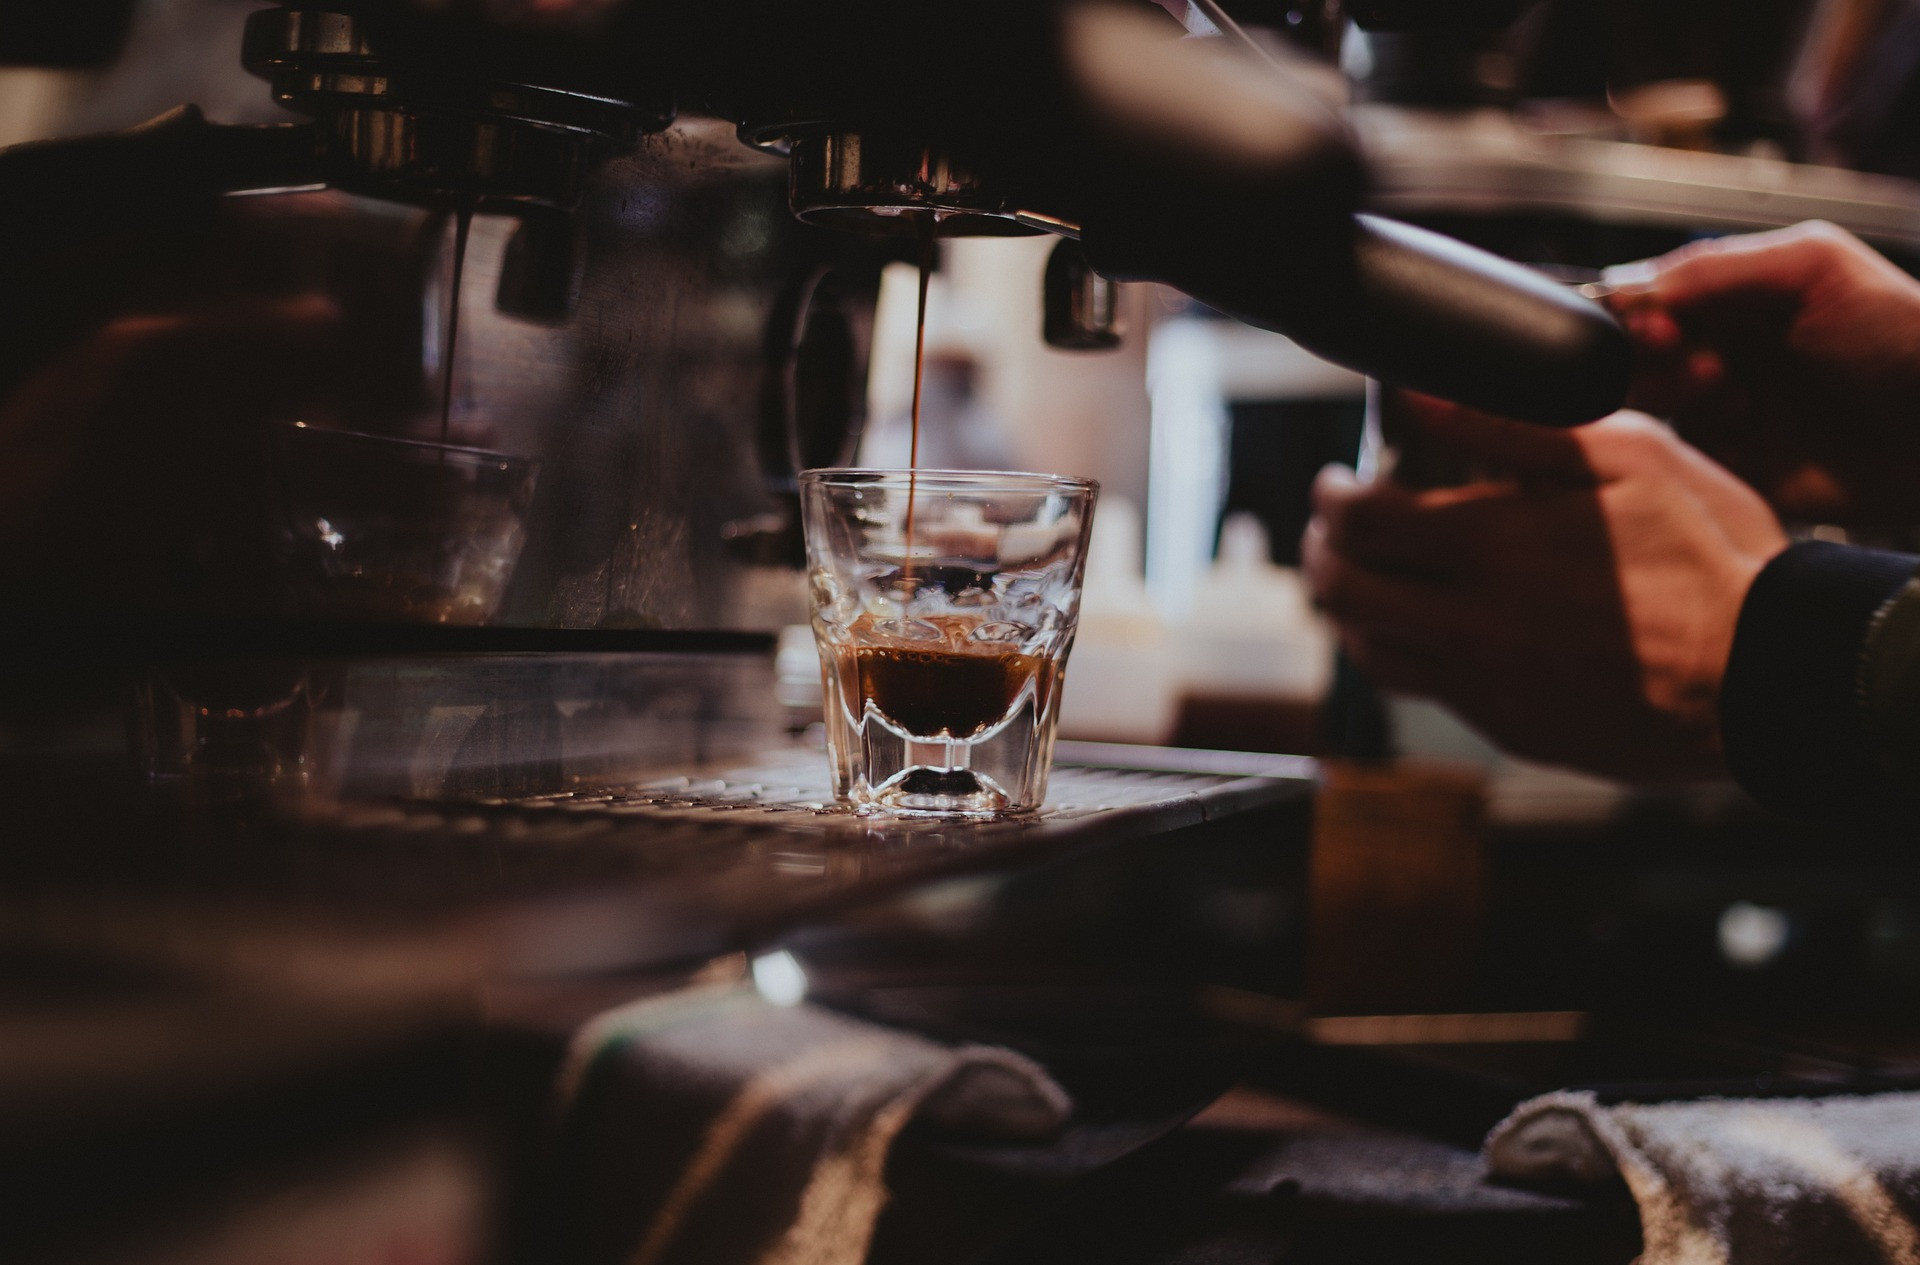 Czy inwestycja w automatyczny ekspres do kawy jest naprawdę słuszna?